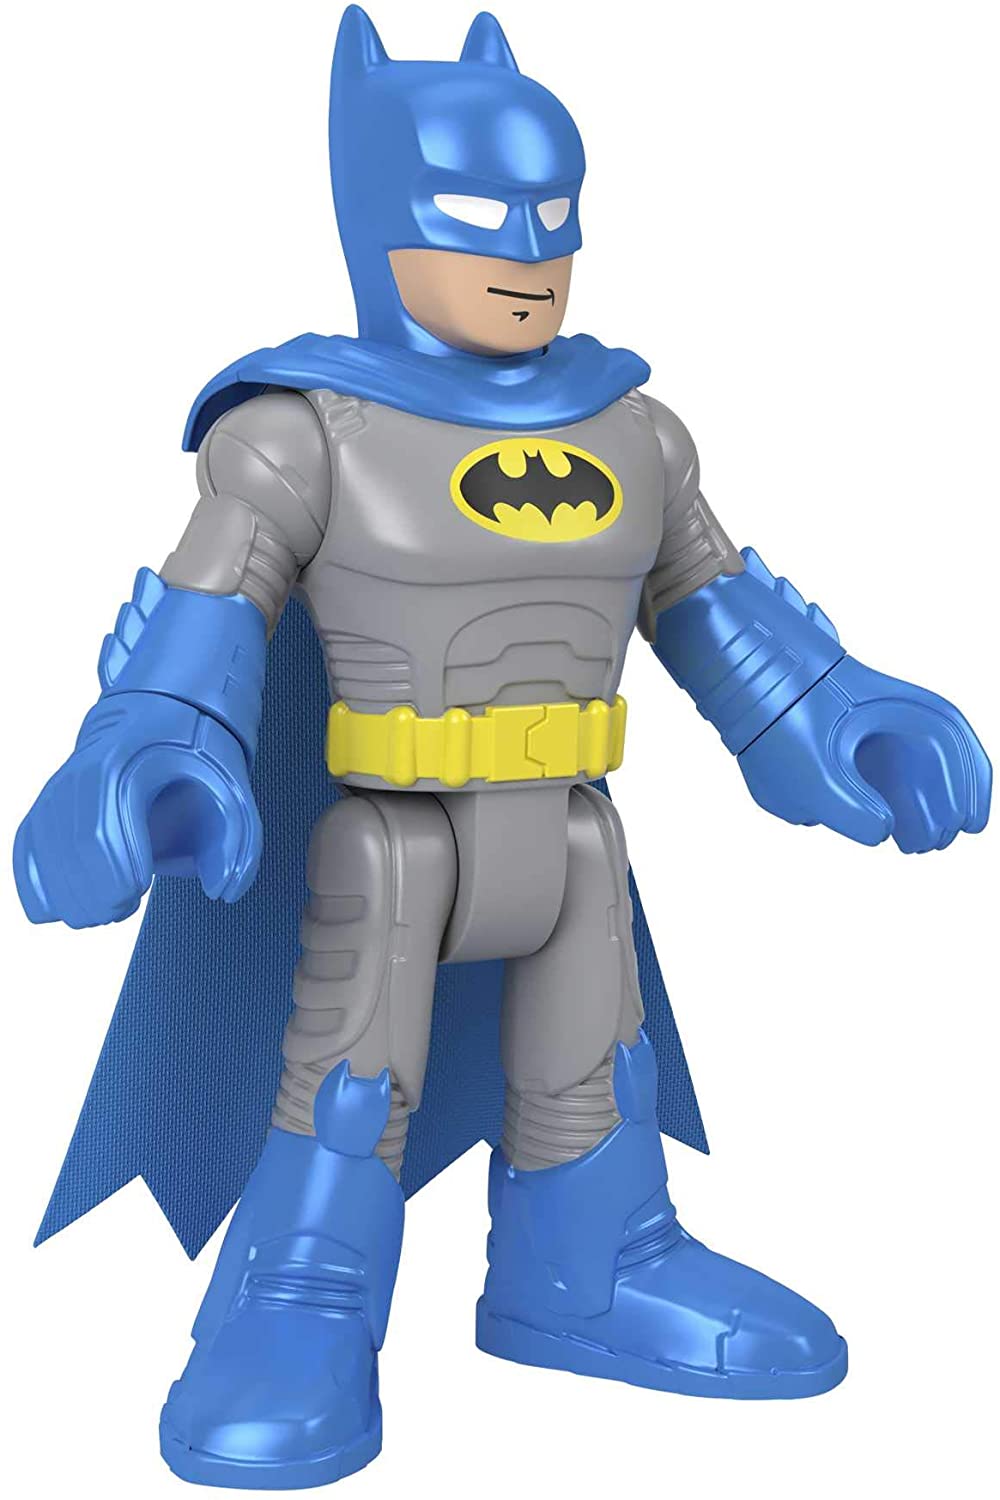 Fisher-Price Imaginext DC Super Friends Batman XL--Blue